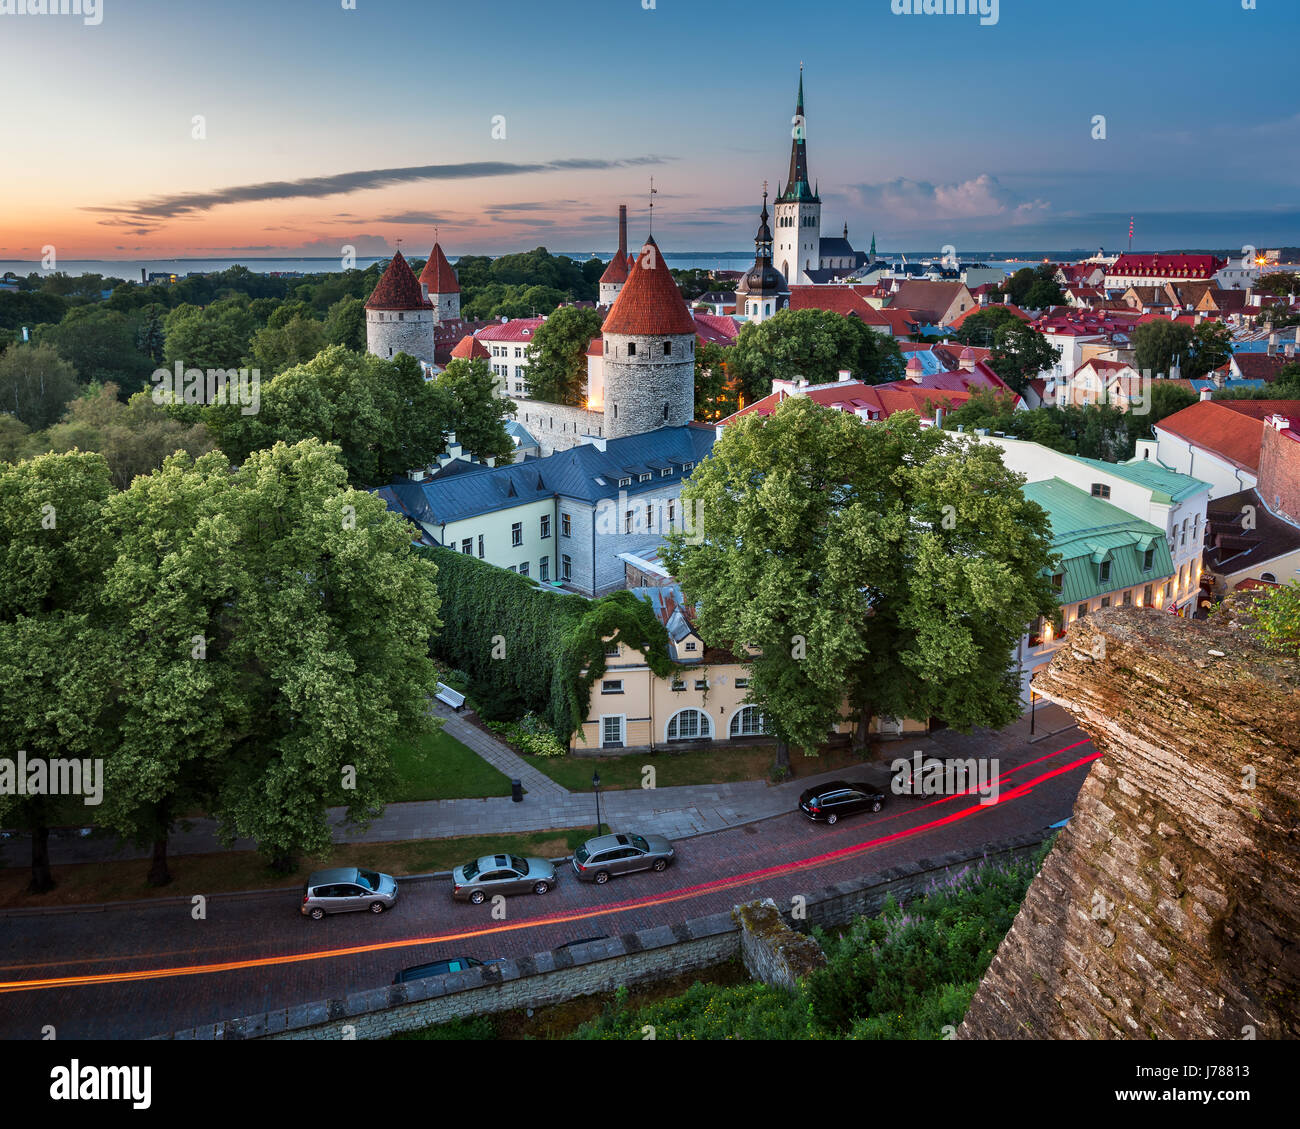 Vue aérienne de la vieille ville de Tallinn à partir de la colline de Toompea dans la soirée, Tallinn, Estonie Banque D'Images